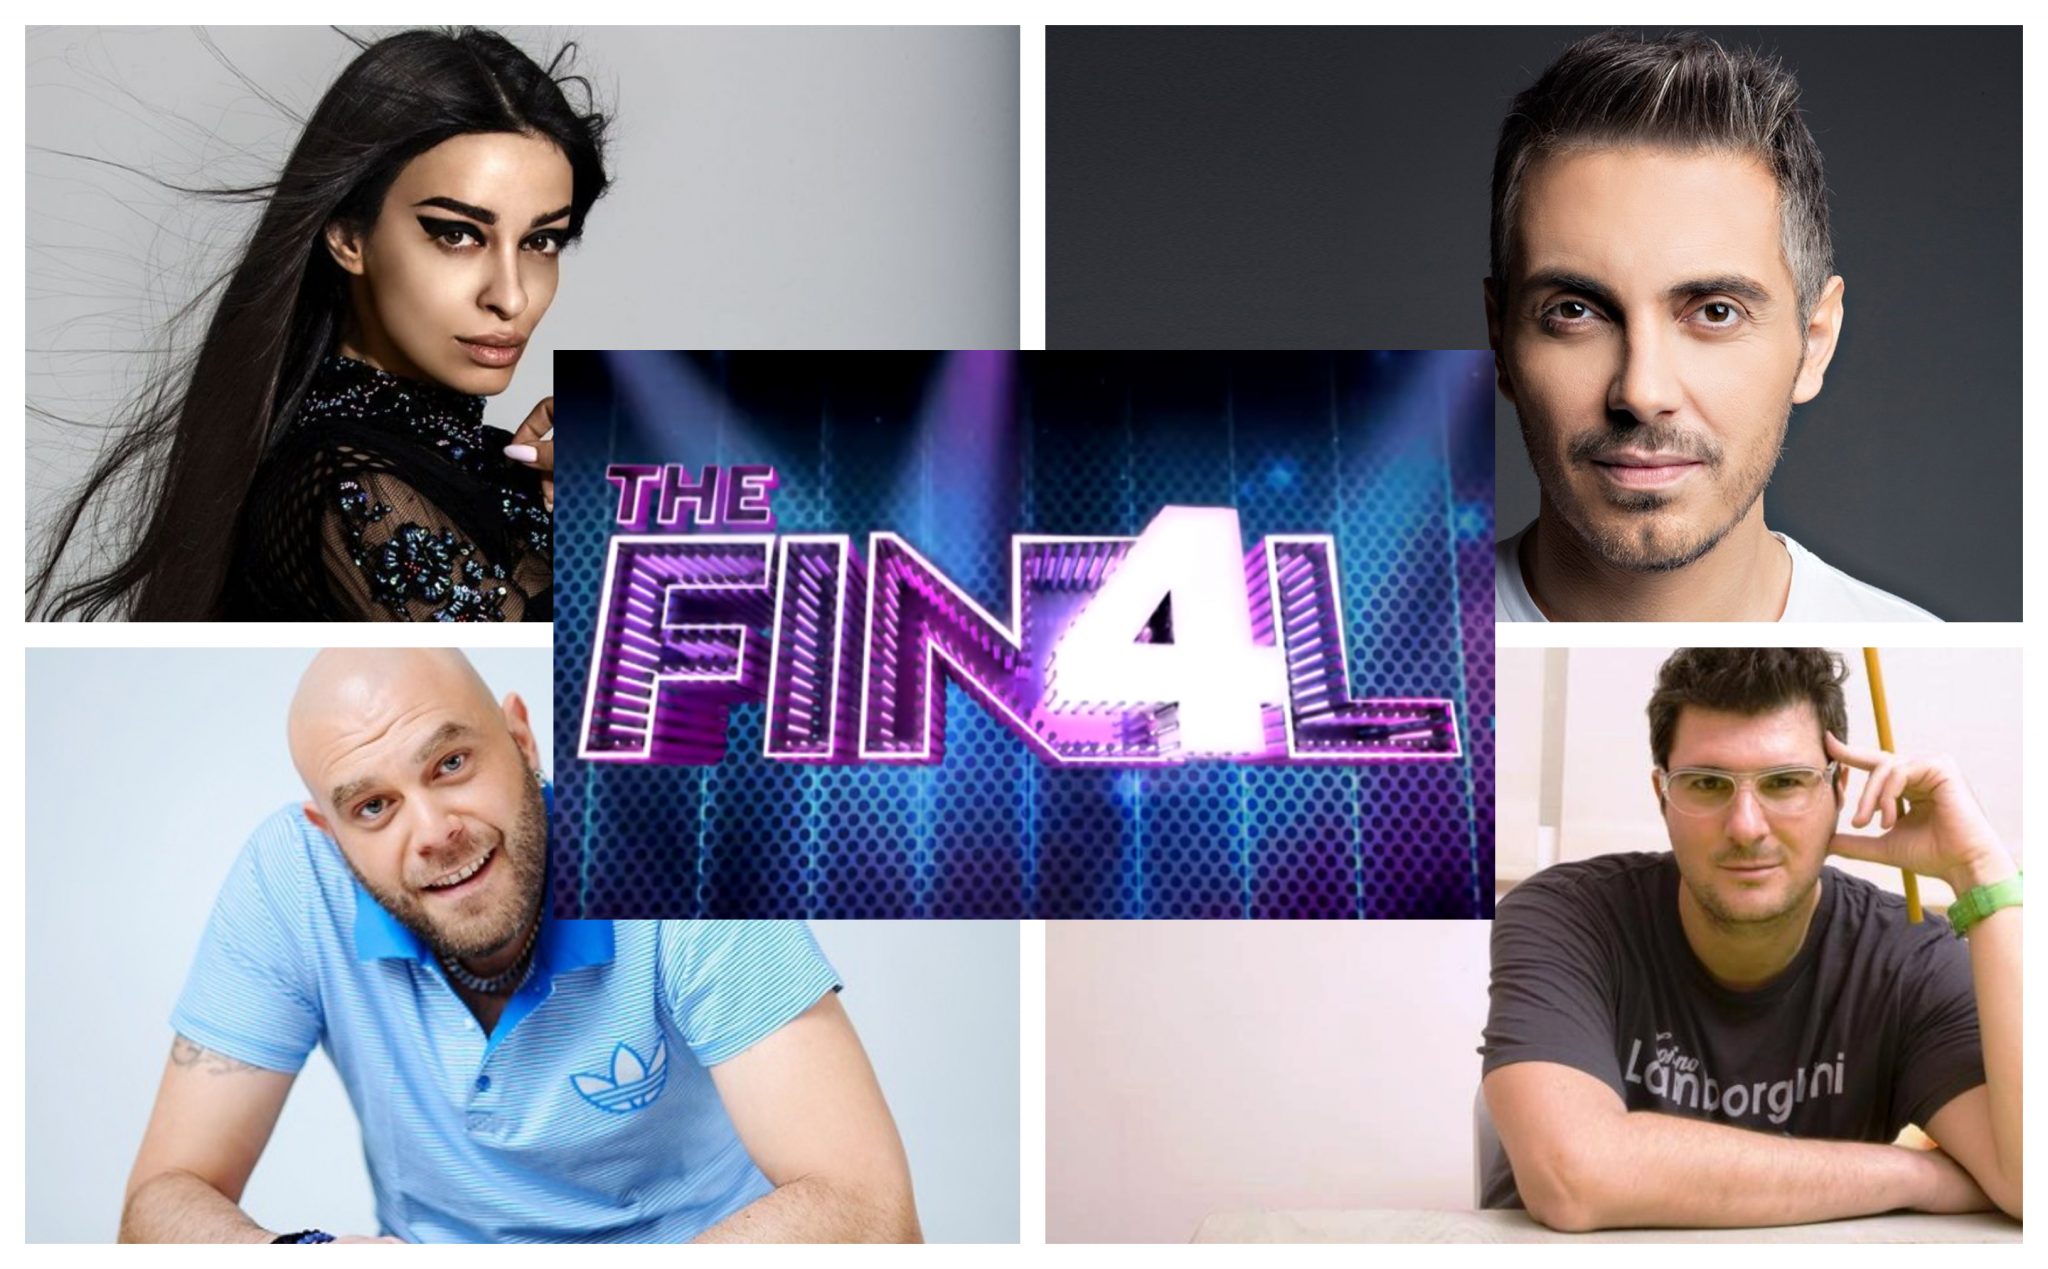 Kορυφαία μουσικά ονόματα θα βρίσκονται στην κριτική επιτροπή του νέου talent show "The Final 4"